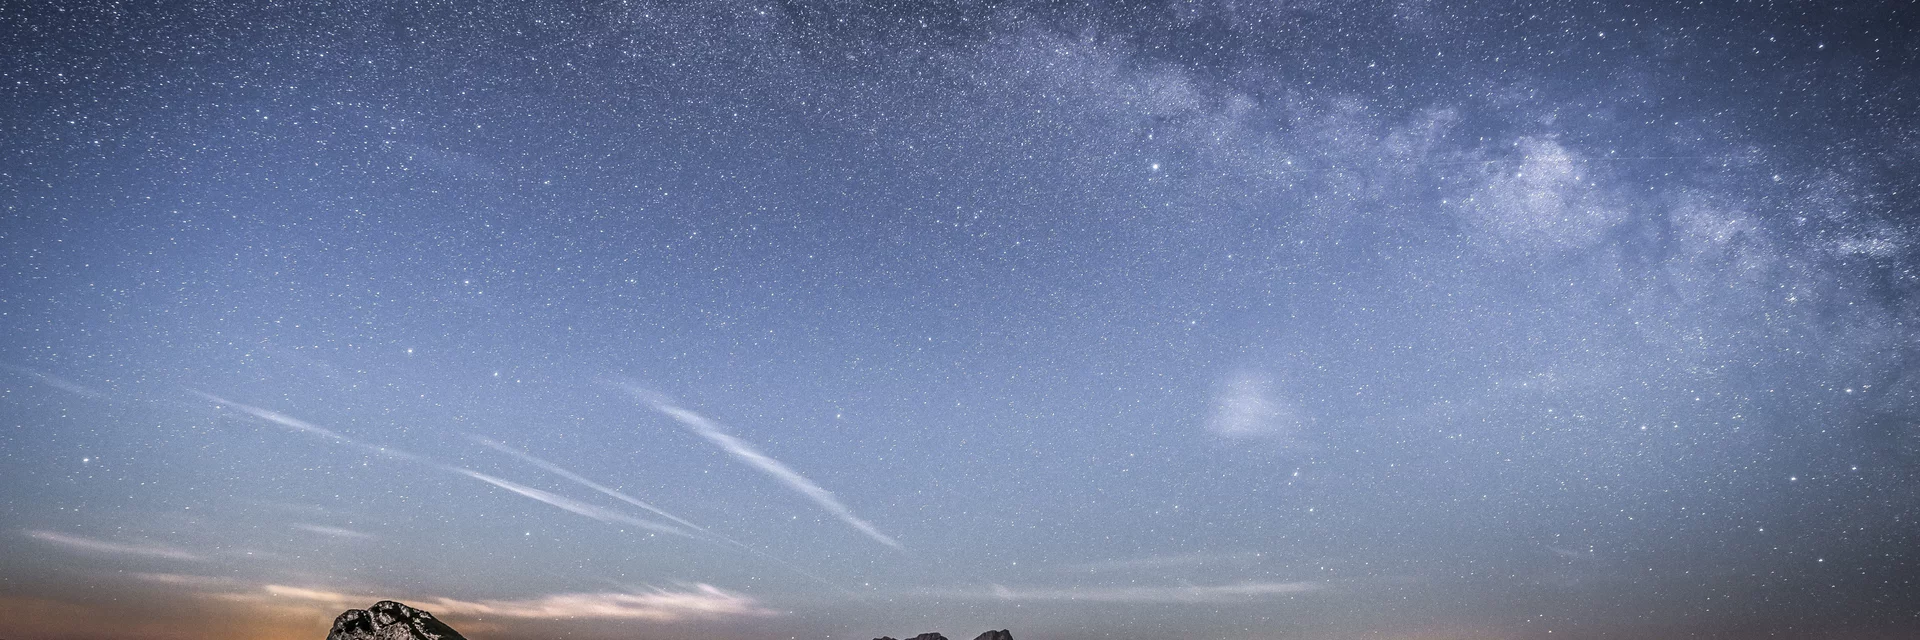 Sternenhimmel über dem Gesäuse | © Nationalpark Gesäuse | Andreas Hollinger | Bild-Nutzung nur in Zusammenhang mit dem Nationalpark Gesäuse möglich.